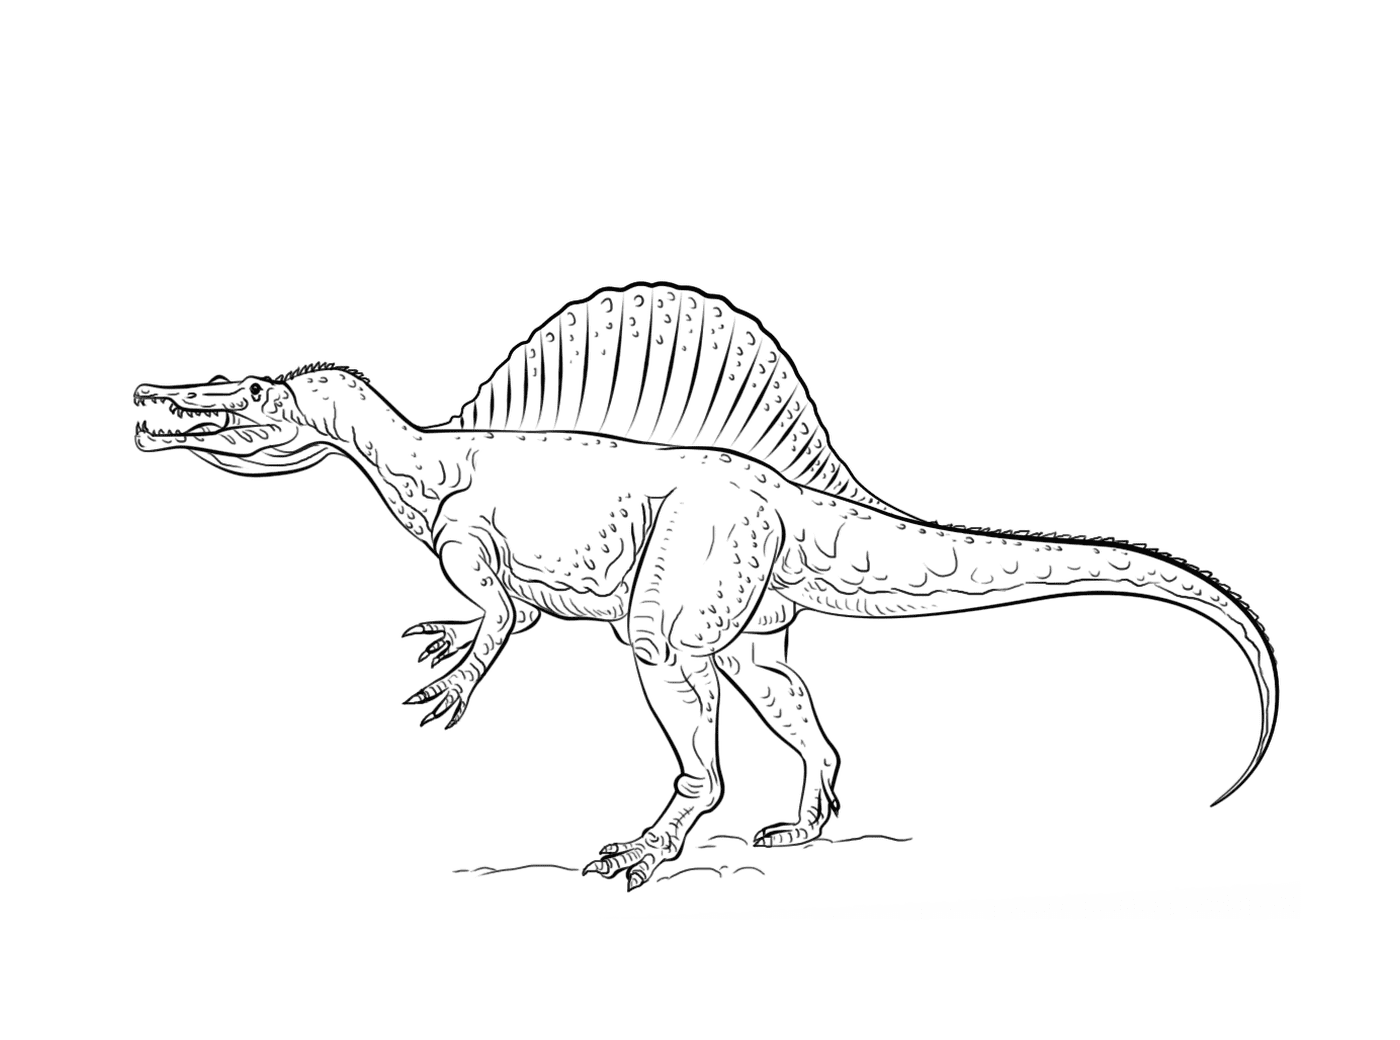  Спинозавр, впечатляющий динозавр 